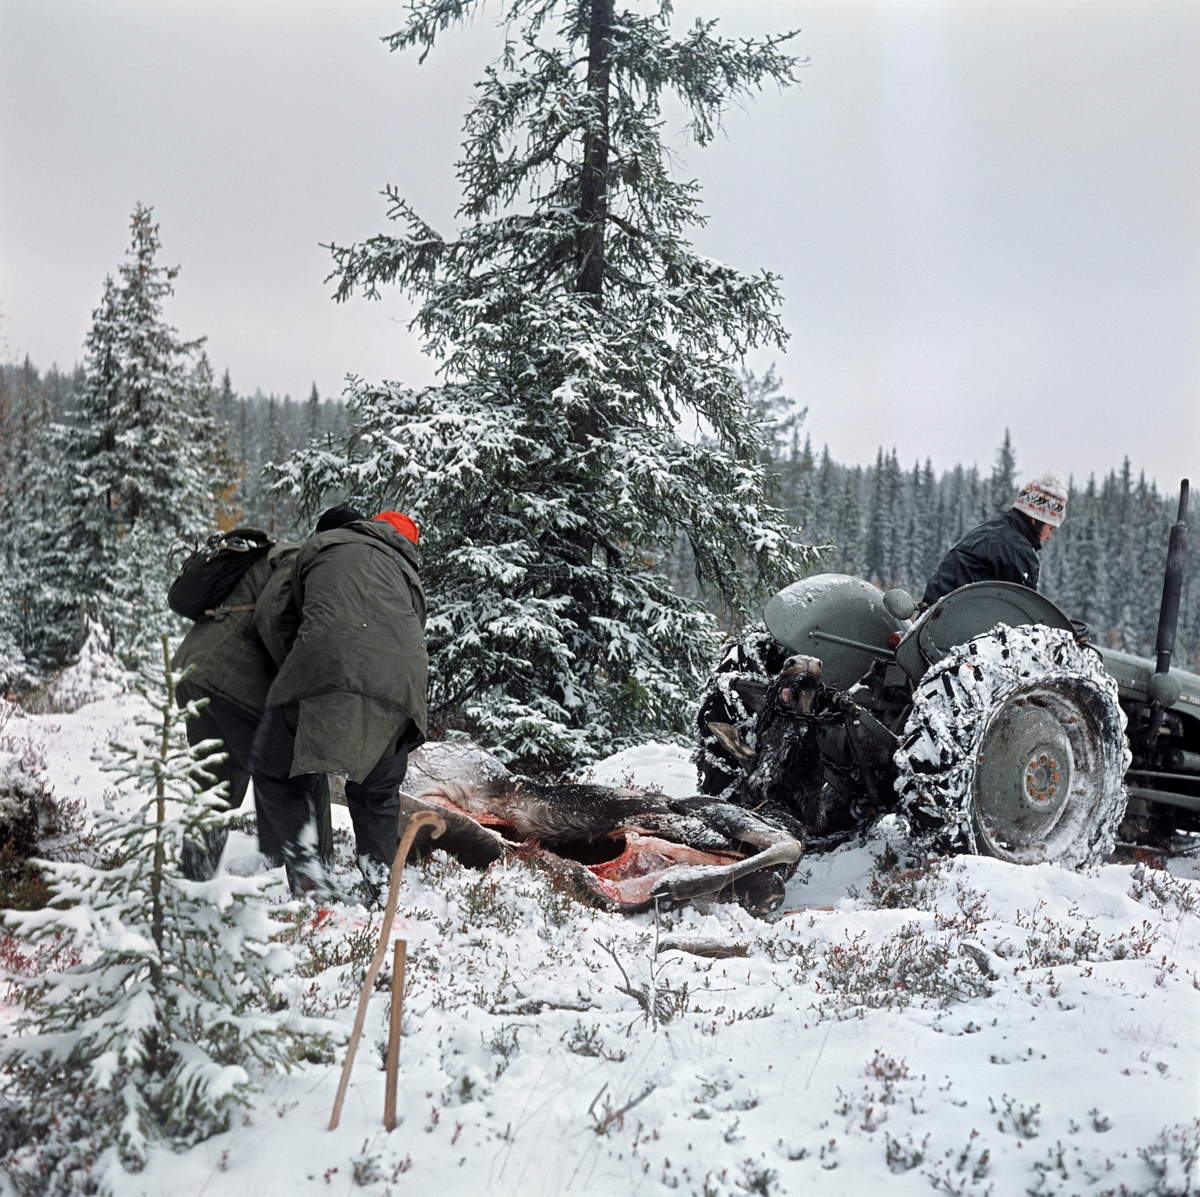 Transport av utvommet elg under elgjakta i Slemdalen i Nordre Osen (Åmot kommune i Hedmark) høsten 1977.  Elgen ble slept på ryggen på den snødekte marka med en traktor (Ferguson "Gråtass") som trekkraft.  Det var Geir Nomerstad som kjørte traktoren.  Bak elgen provde to jaktkledde menn å få den til å ligge riktig, før traktoren satte seg i bevegelse.  Bildet er tatt i et forholdsvis åpent parti i en skog der gran var dominernde treslag.